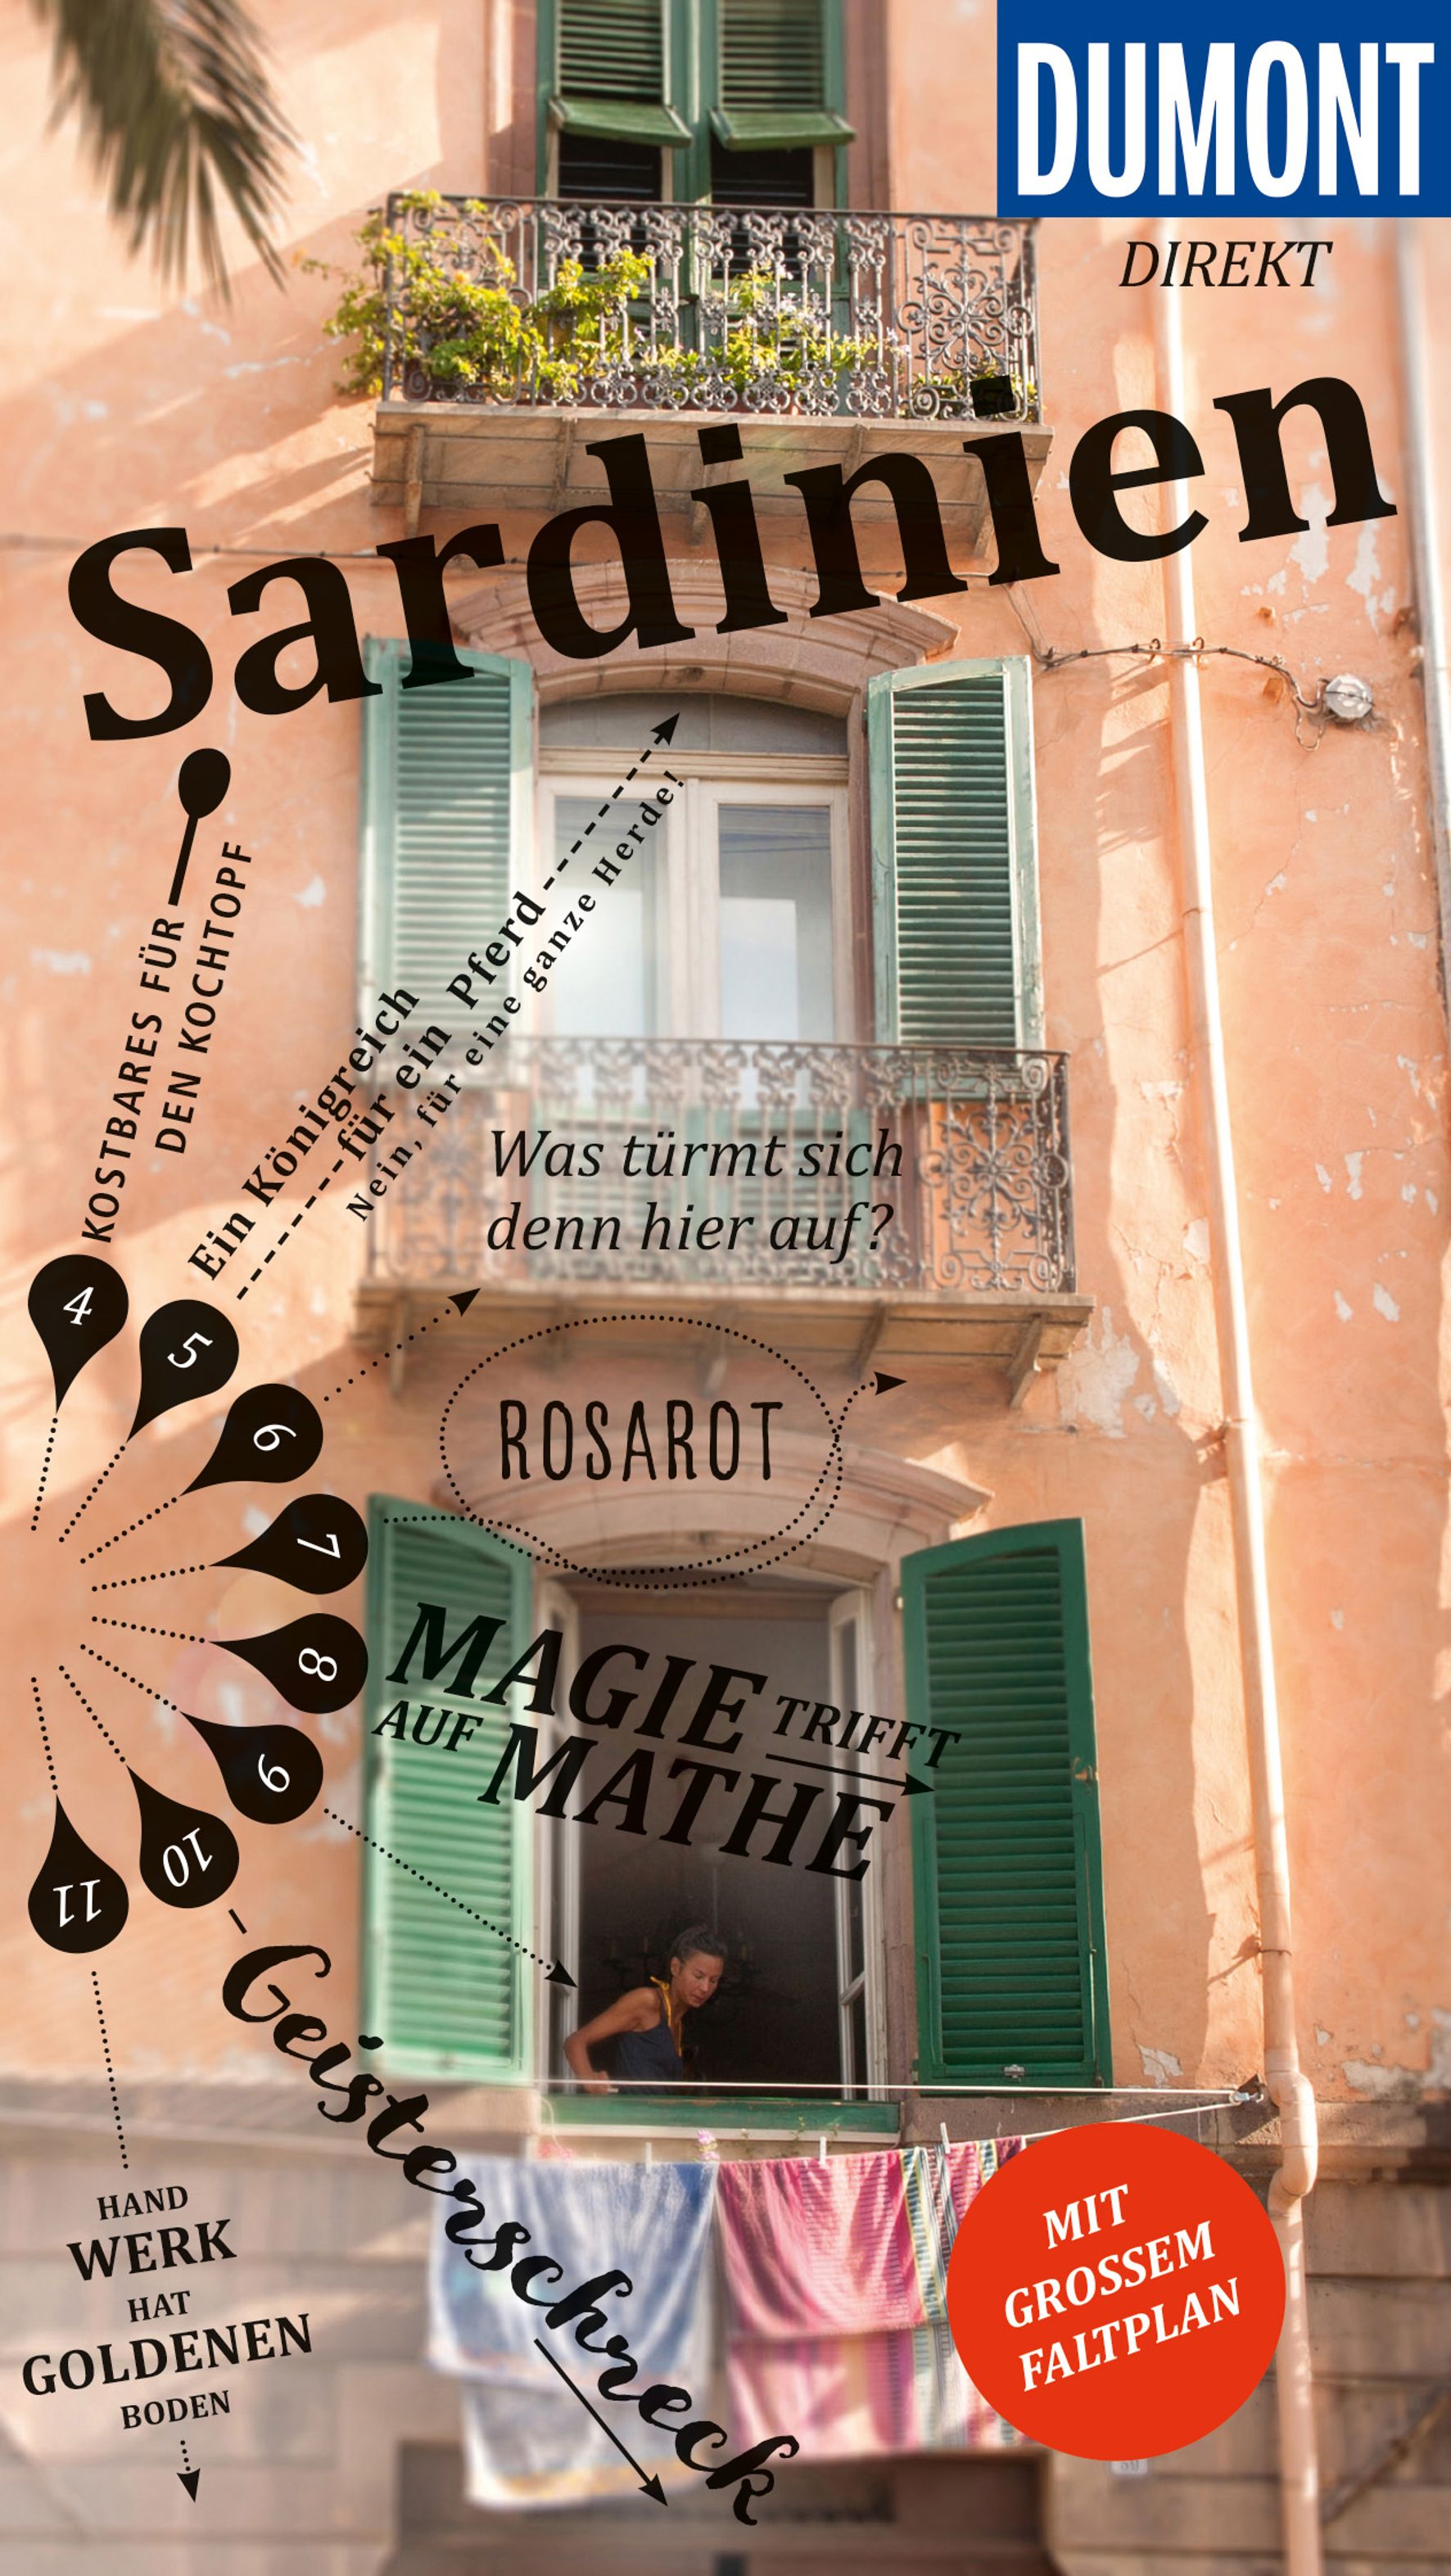 MAIRDUMONT Sardinien (eBook)